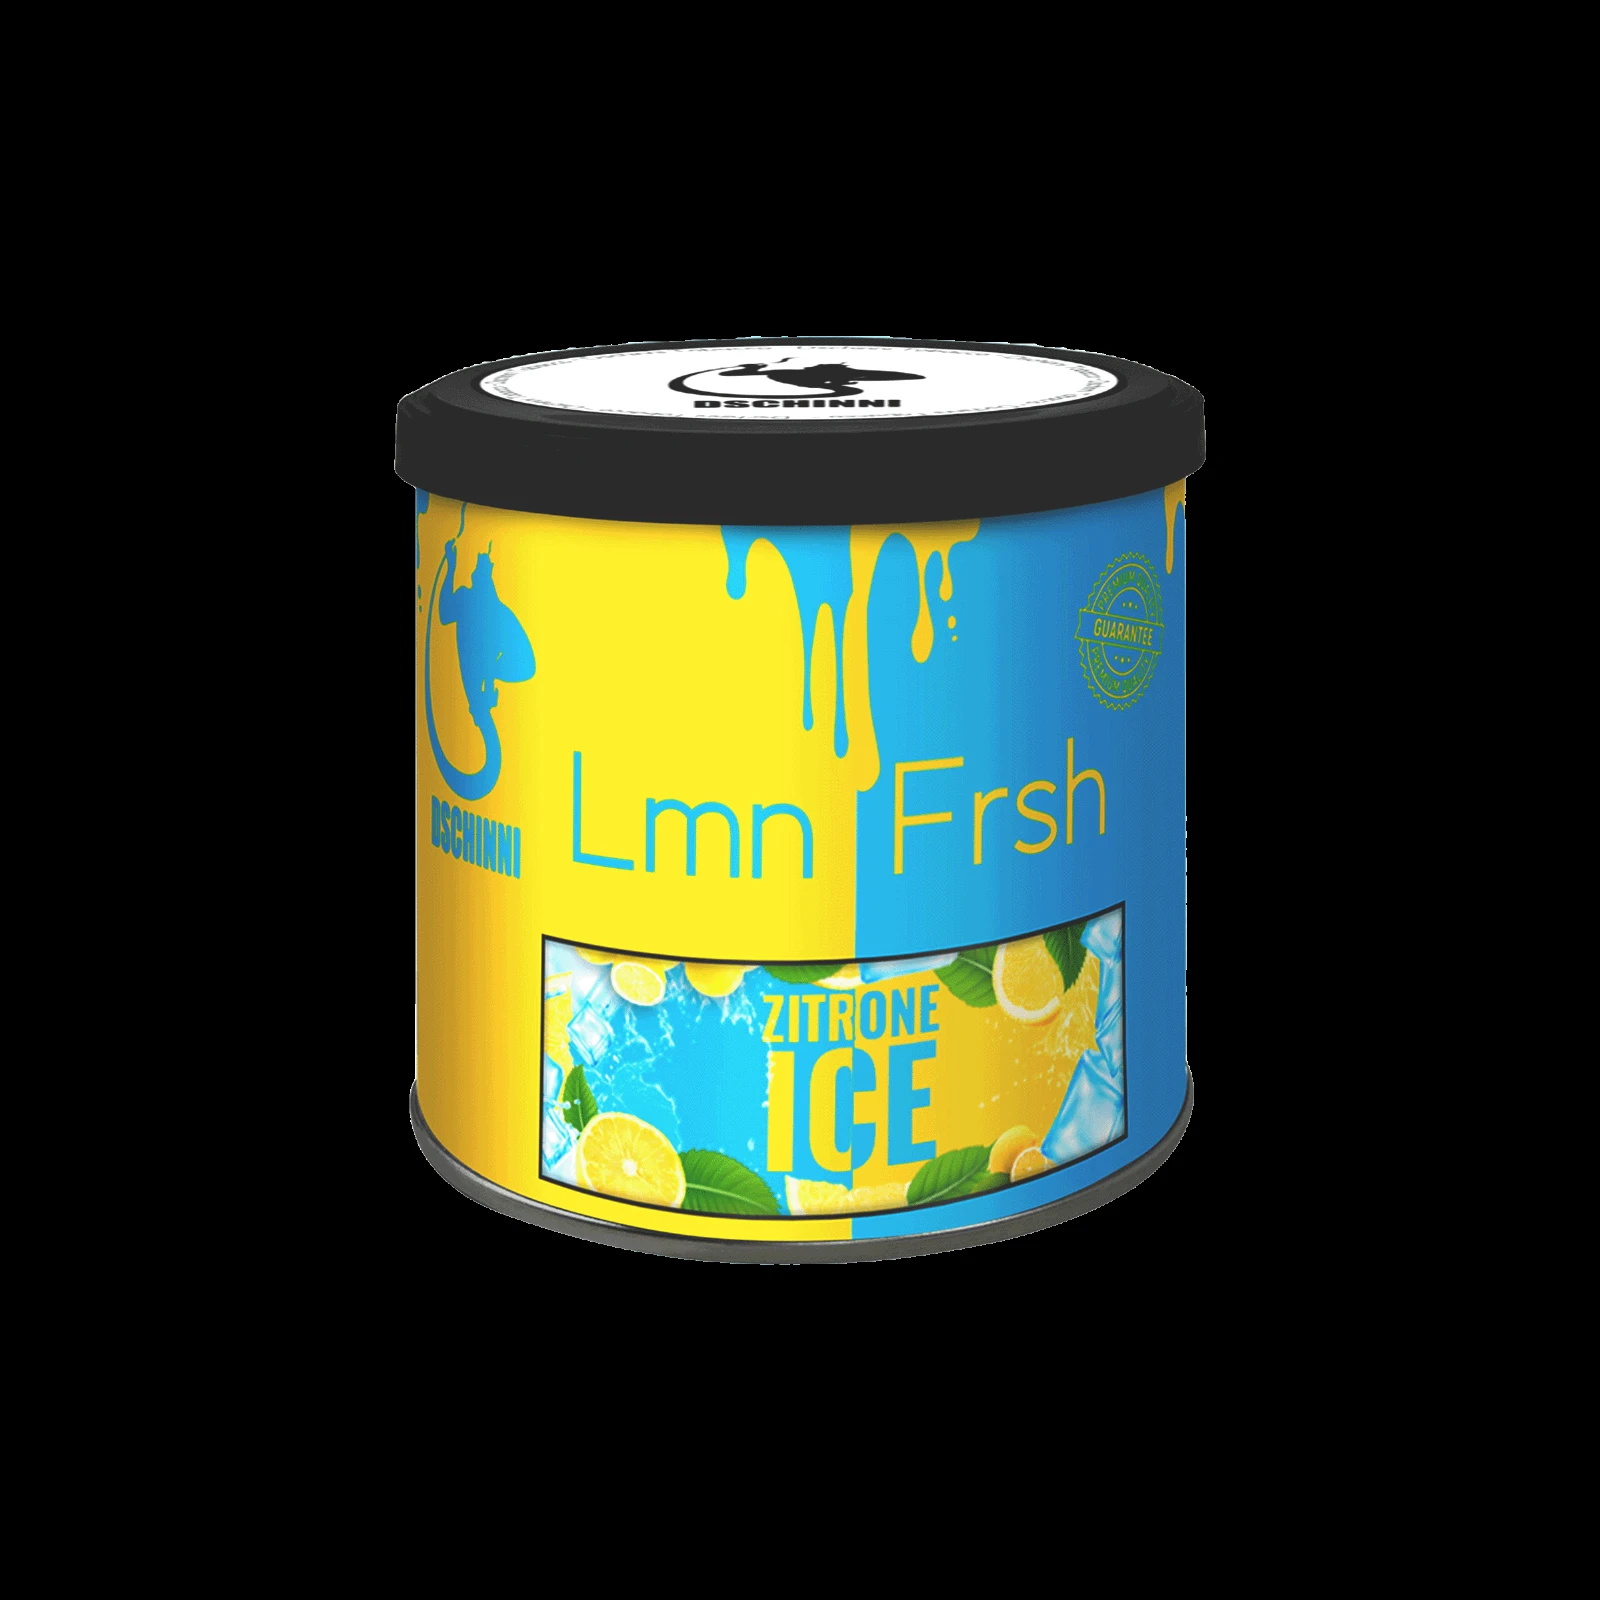 Dschinni - Pfeifentabak - Lemon Fresh - 65g | Shishas günstig kaufen2